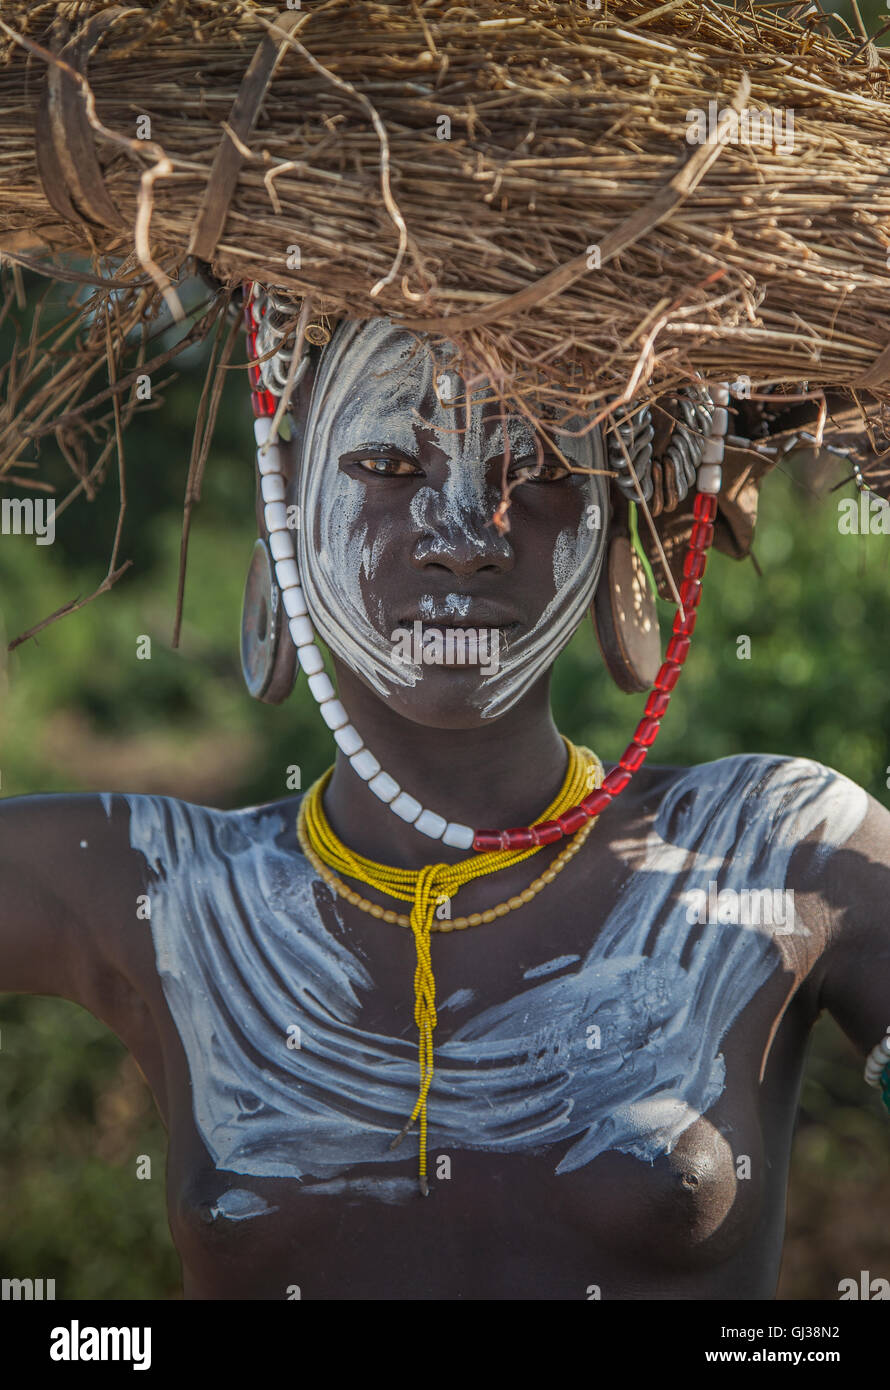 Femme de la tribu Mursi, vallée de l'Omo, Ethiopie Banque D'Images